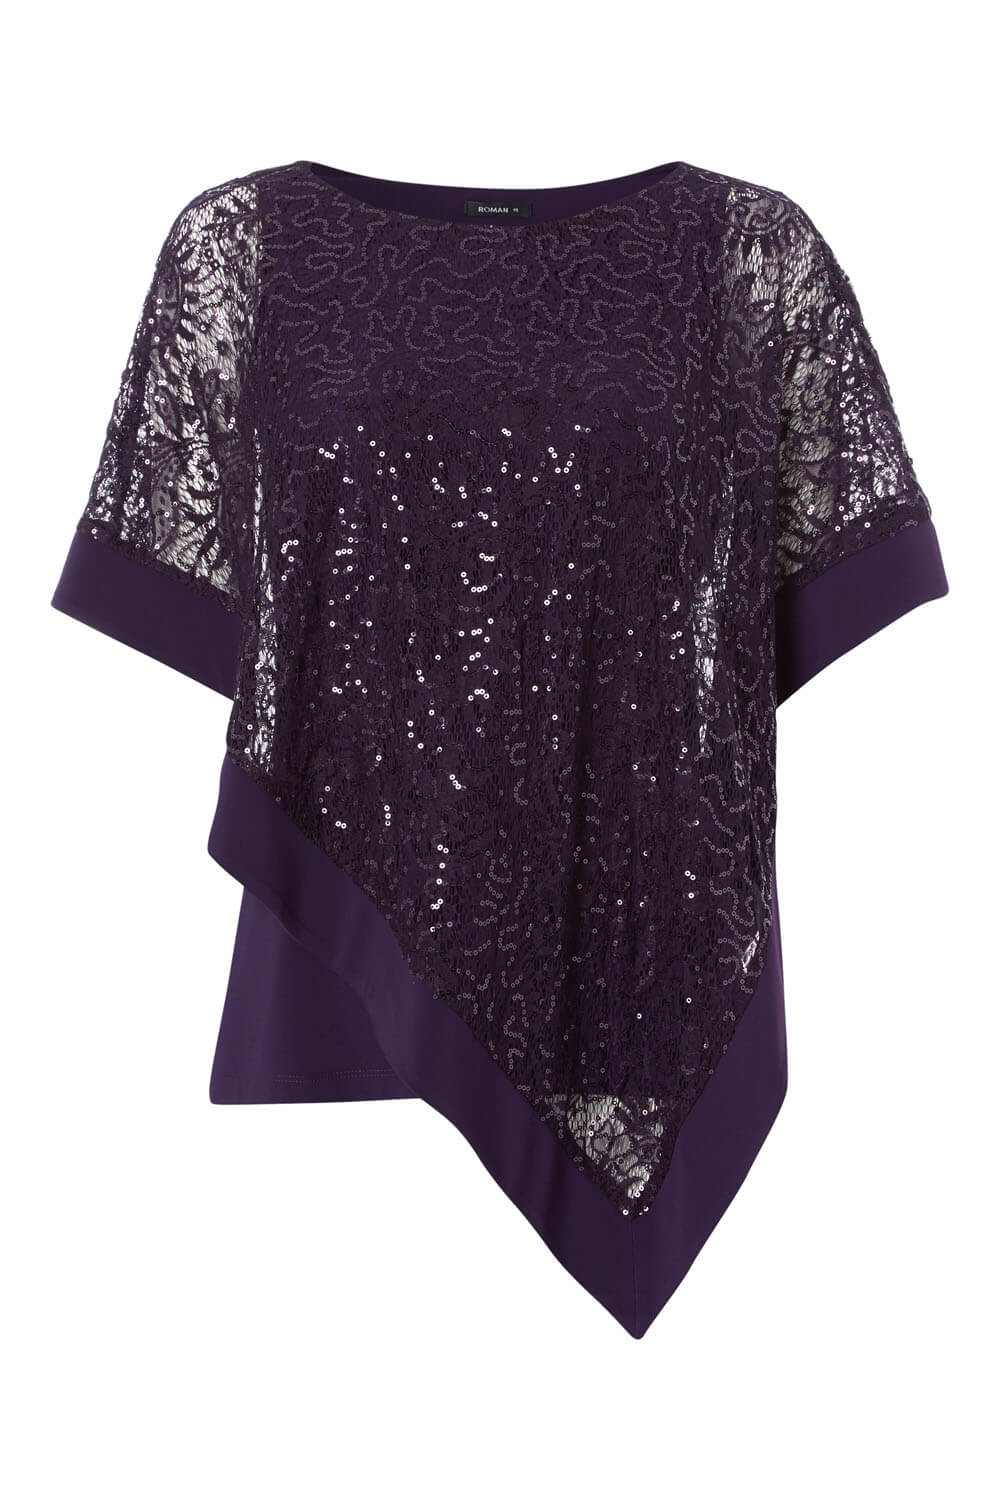 Sequin Embellished Overlay Top in Purple - Roman Originals UK